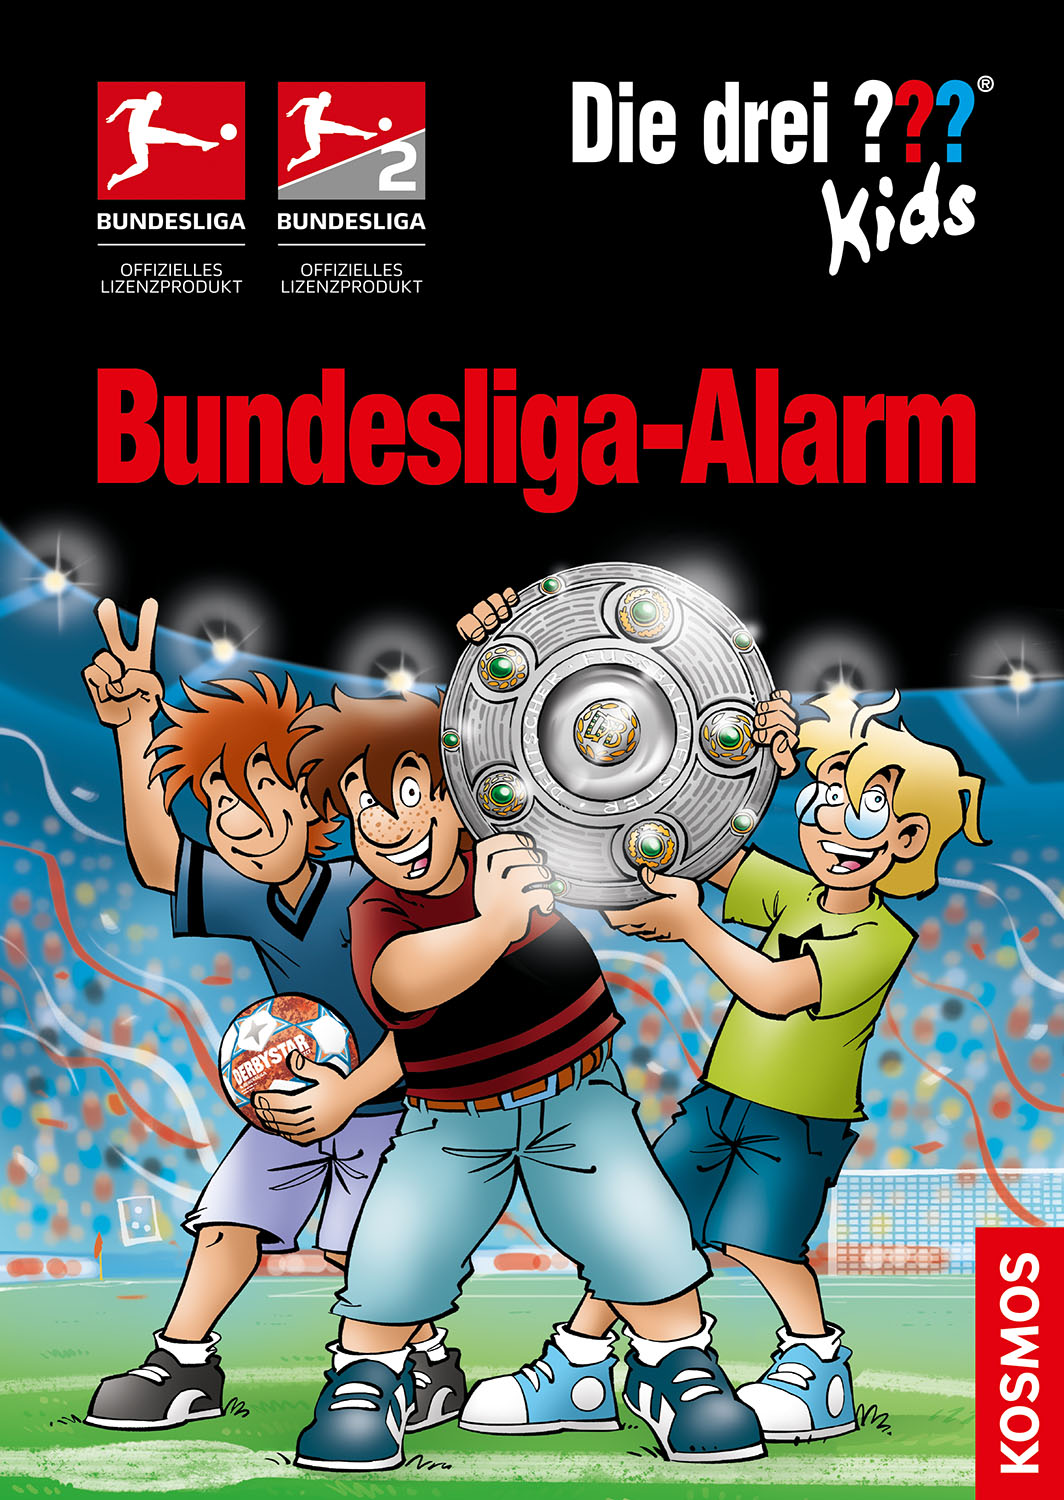 Die Drei ??? (Fragezeichen) Kids, Buch-Band 500: Die drei ??? Kids, Bundesliga-Alarm